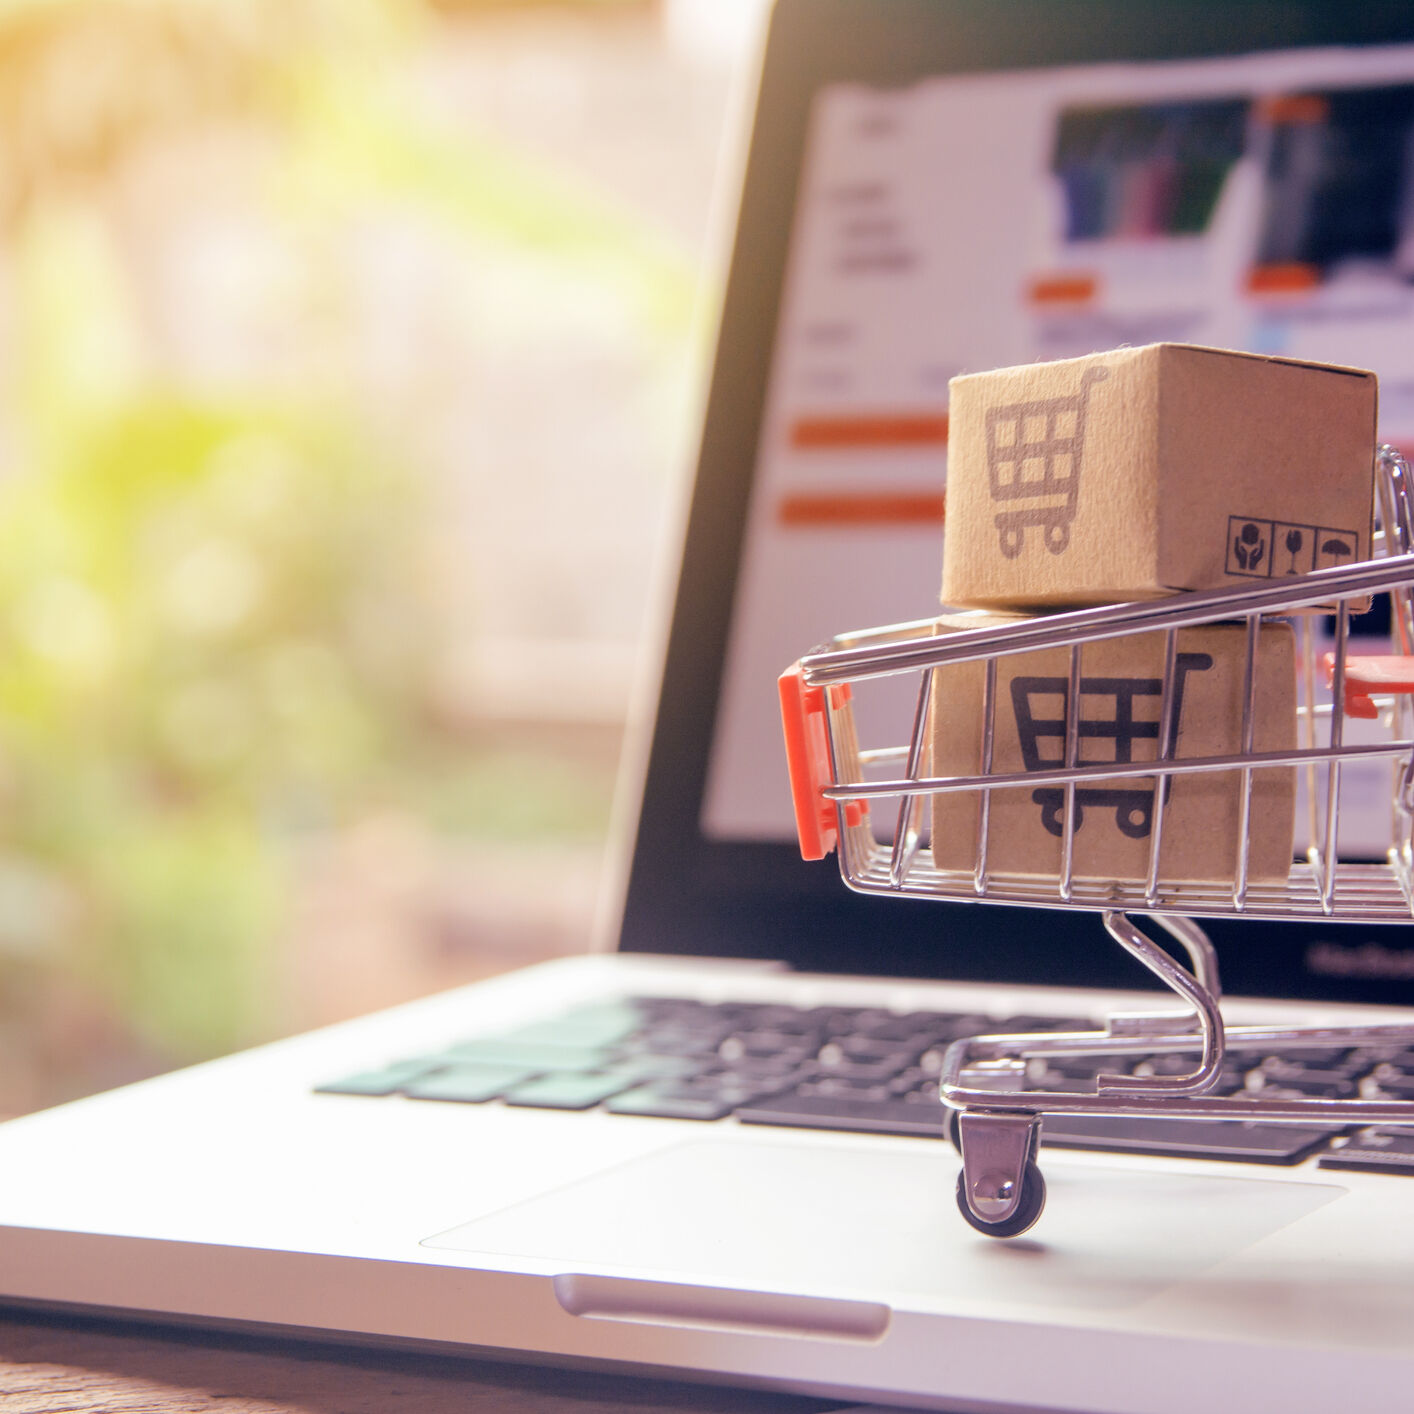 Virtuelna kolica za kupovinu su ključni element u svim praksama e-trgovine